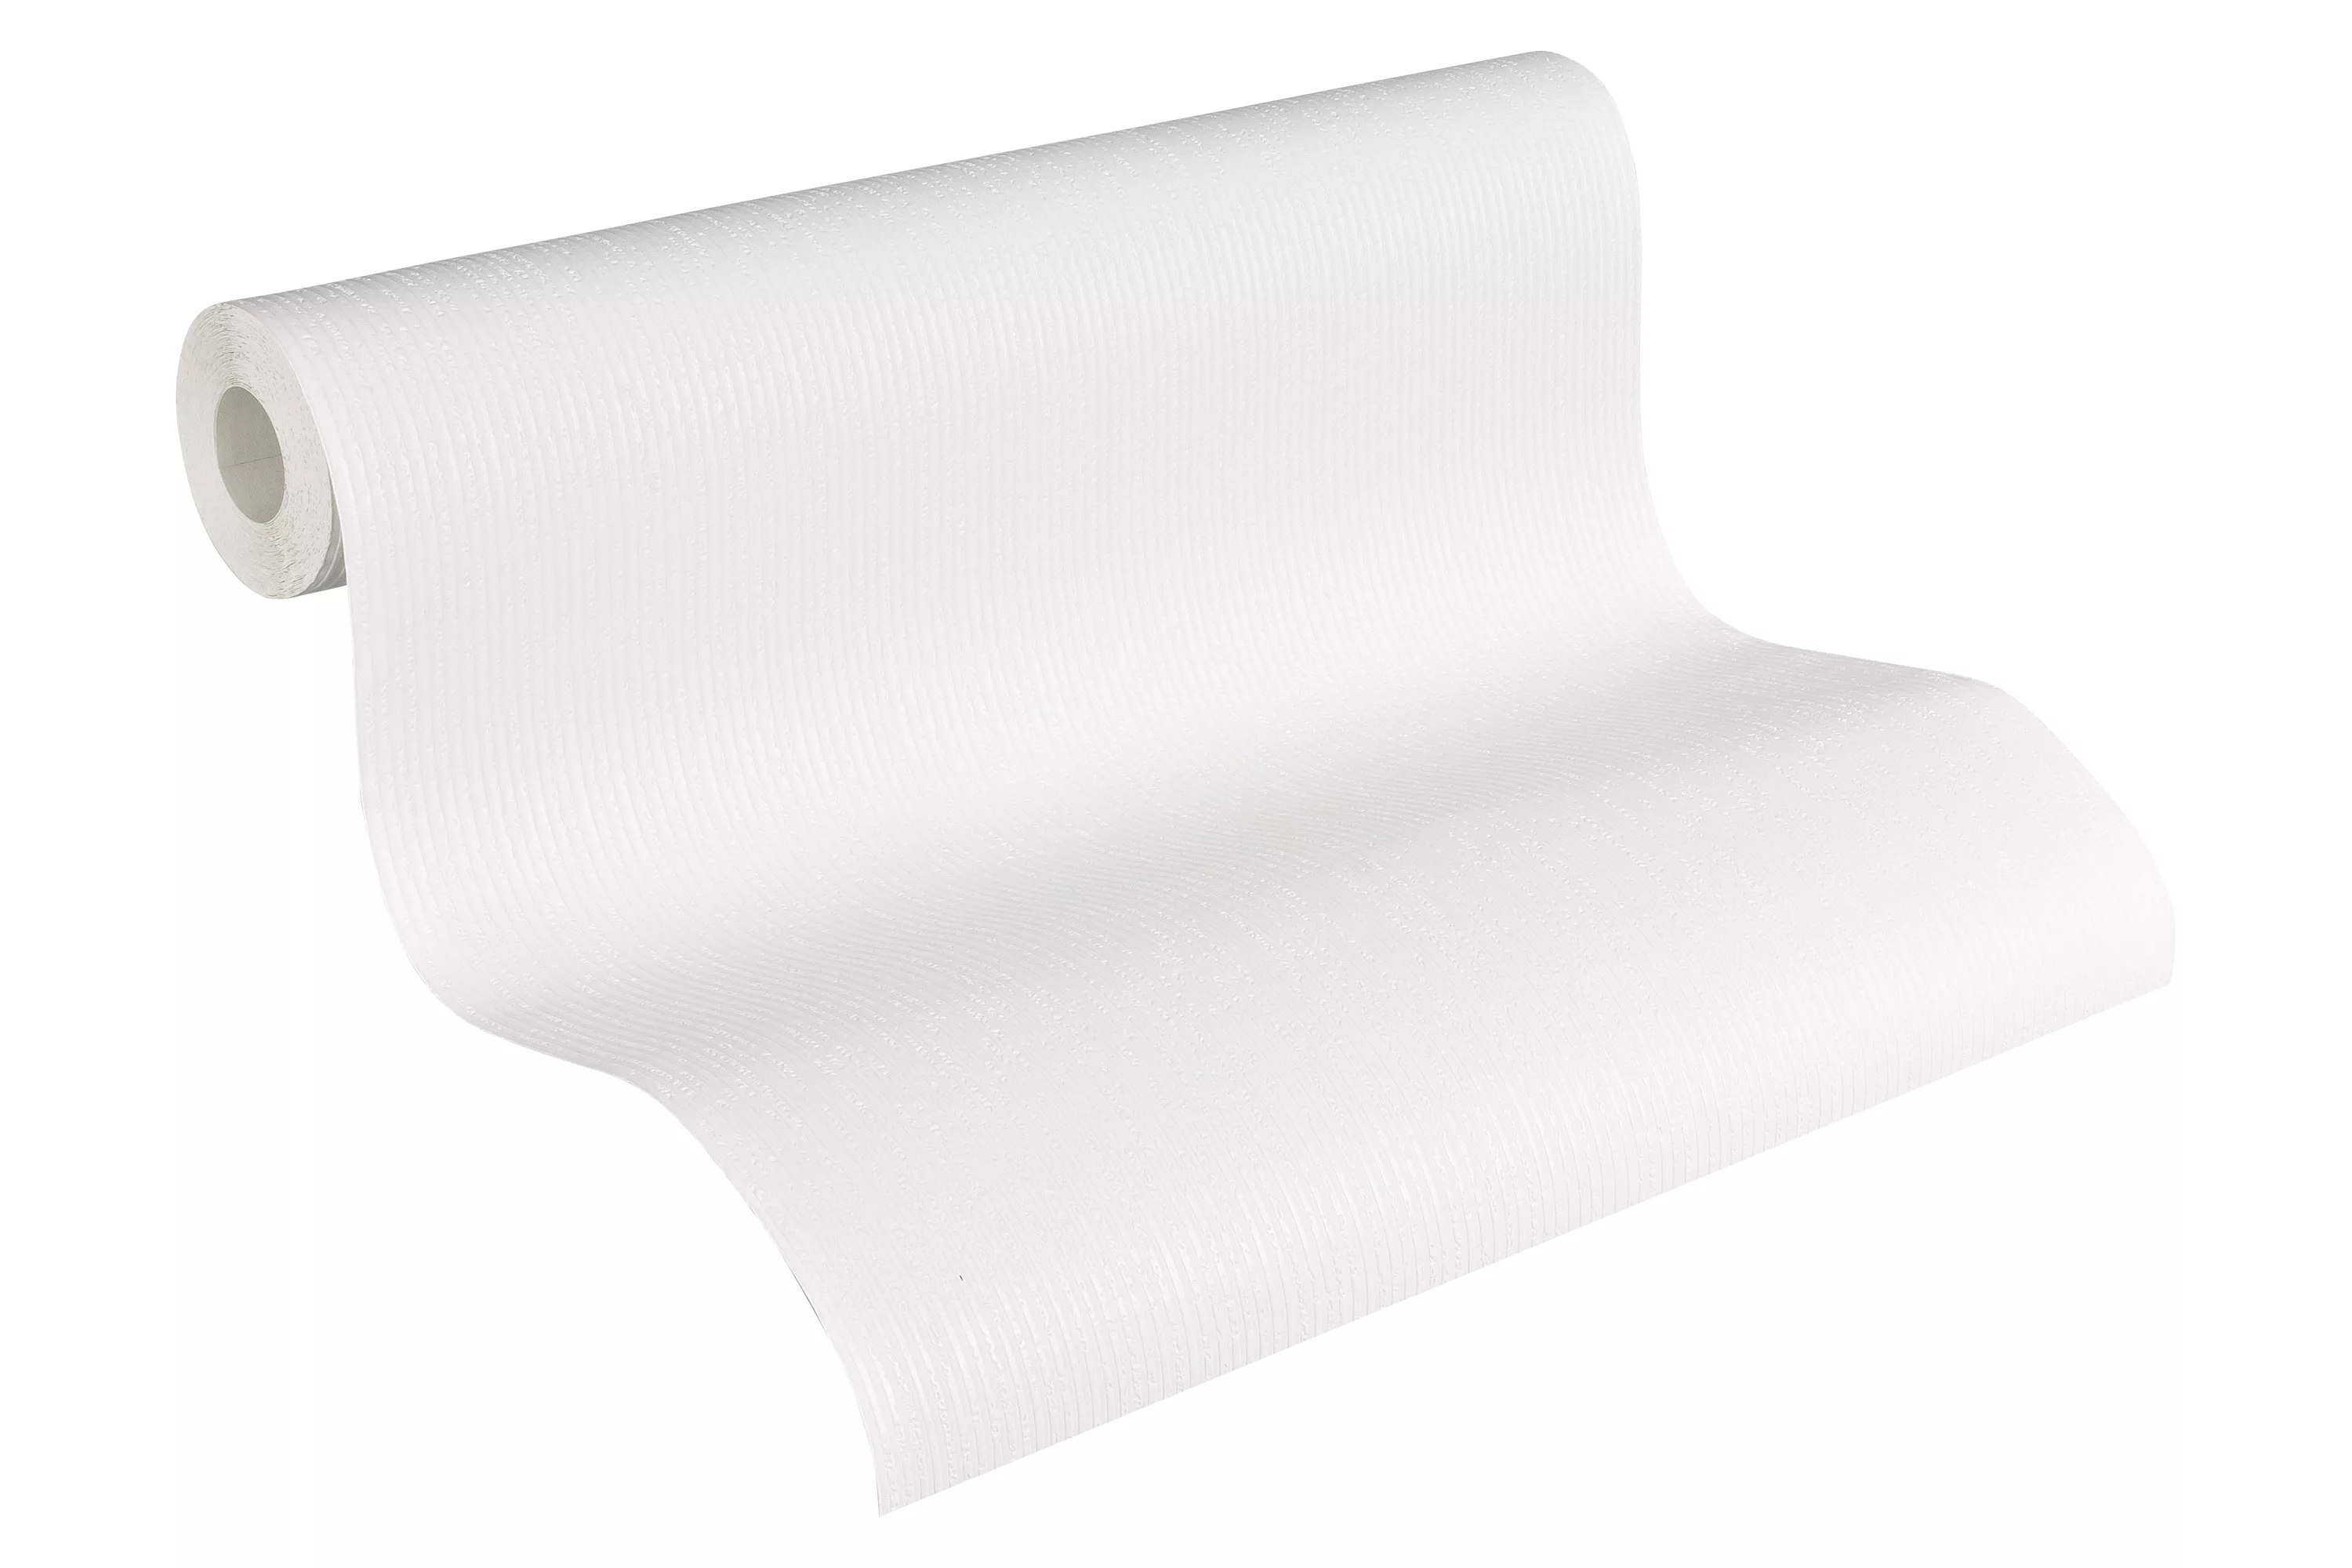 Bricoflor Geschwungene Linien Tapete Weiß Muster Vliestapete überstreichbar günstig online kaufen